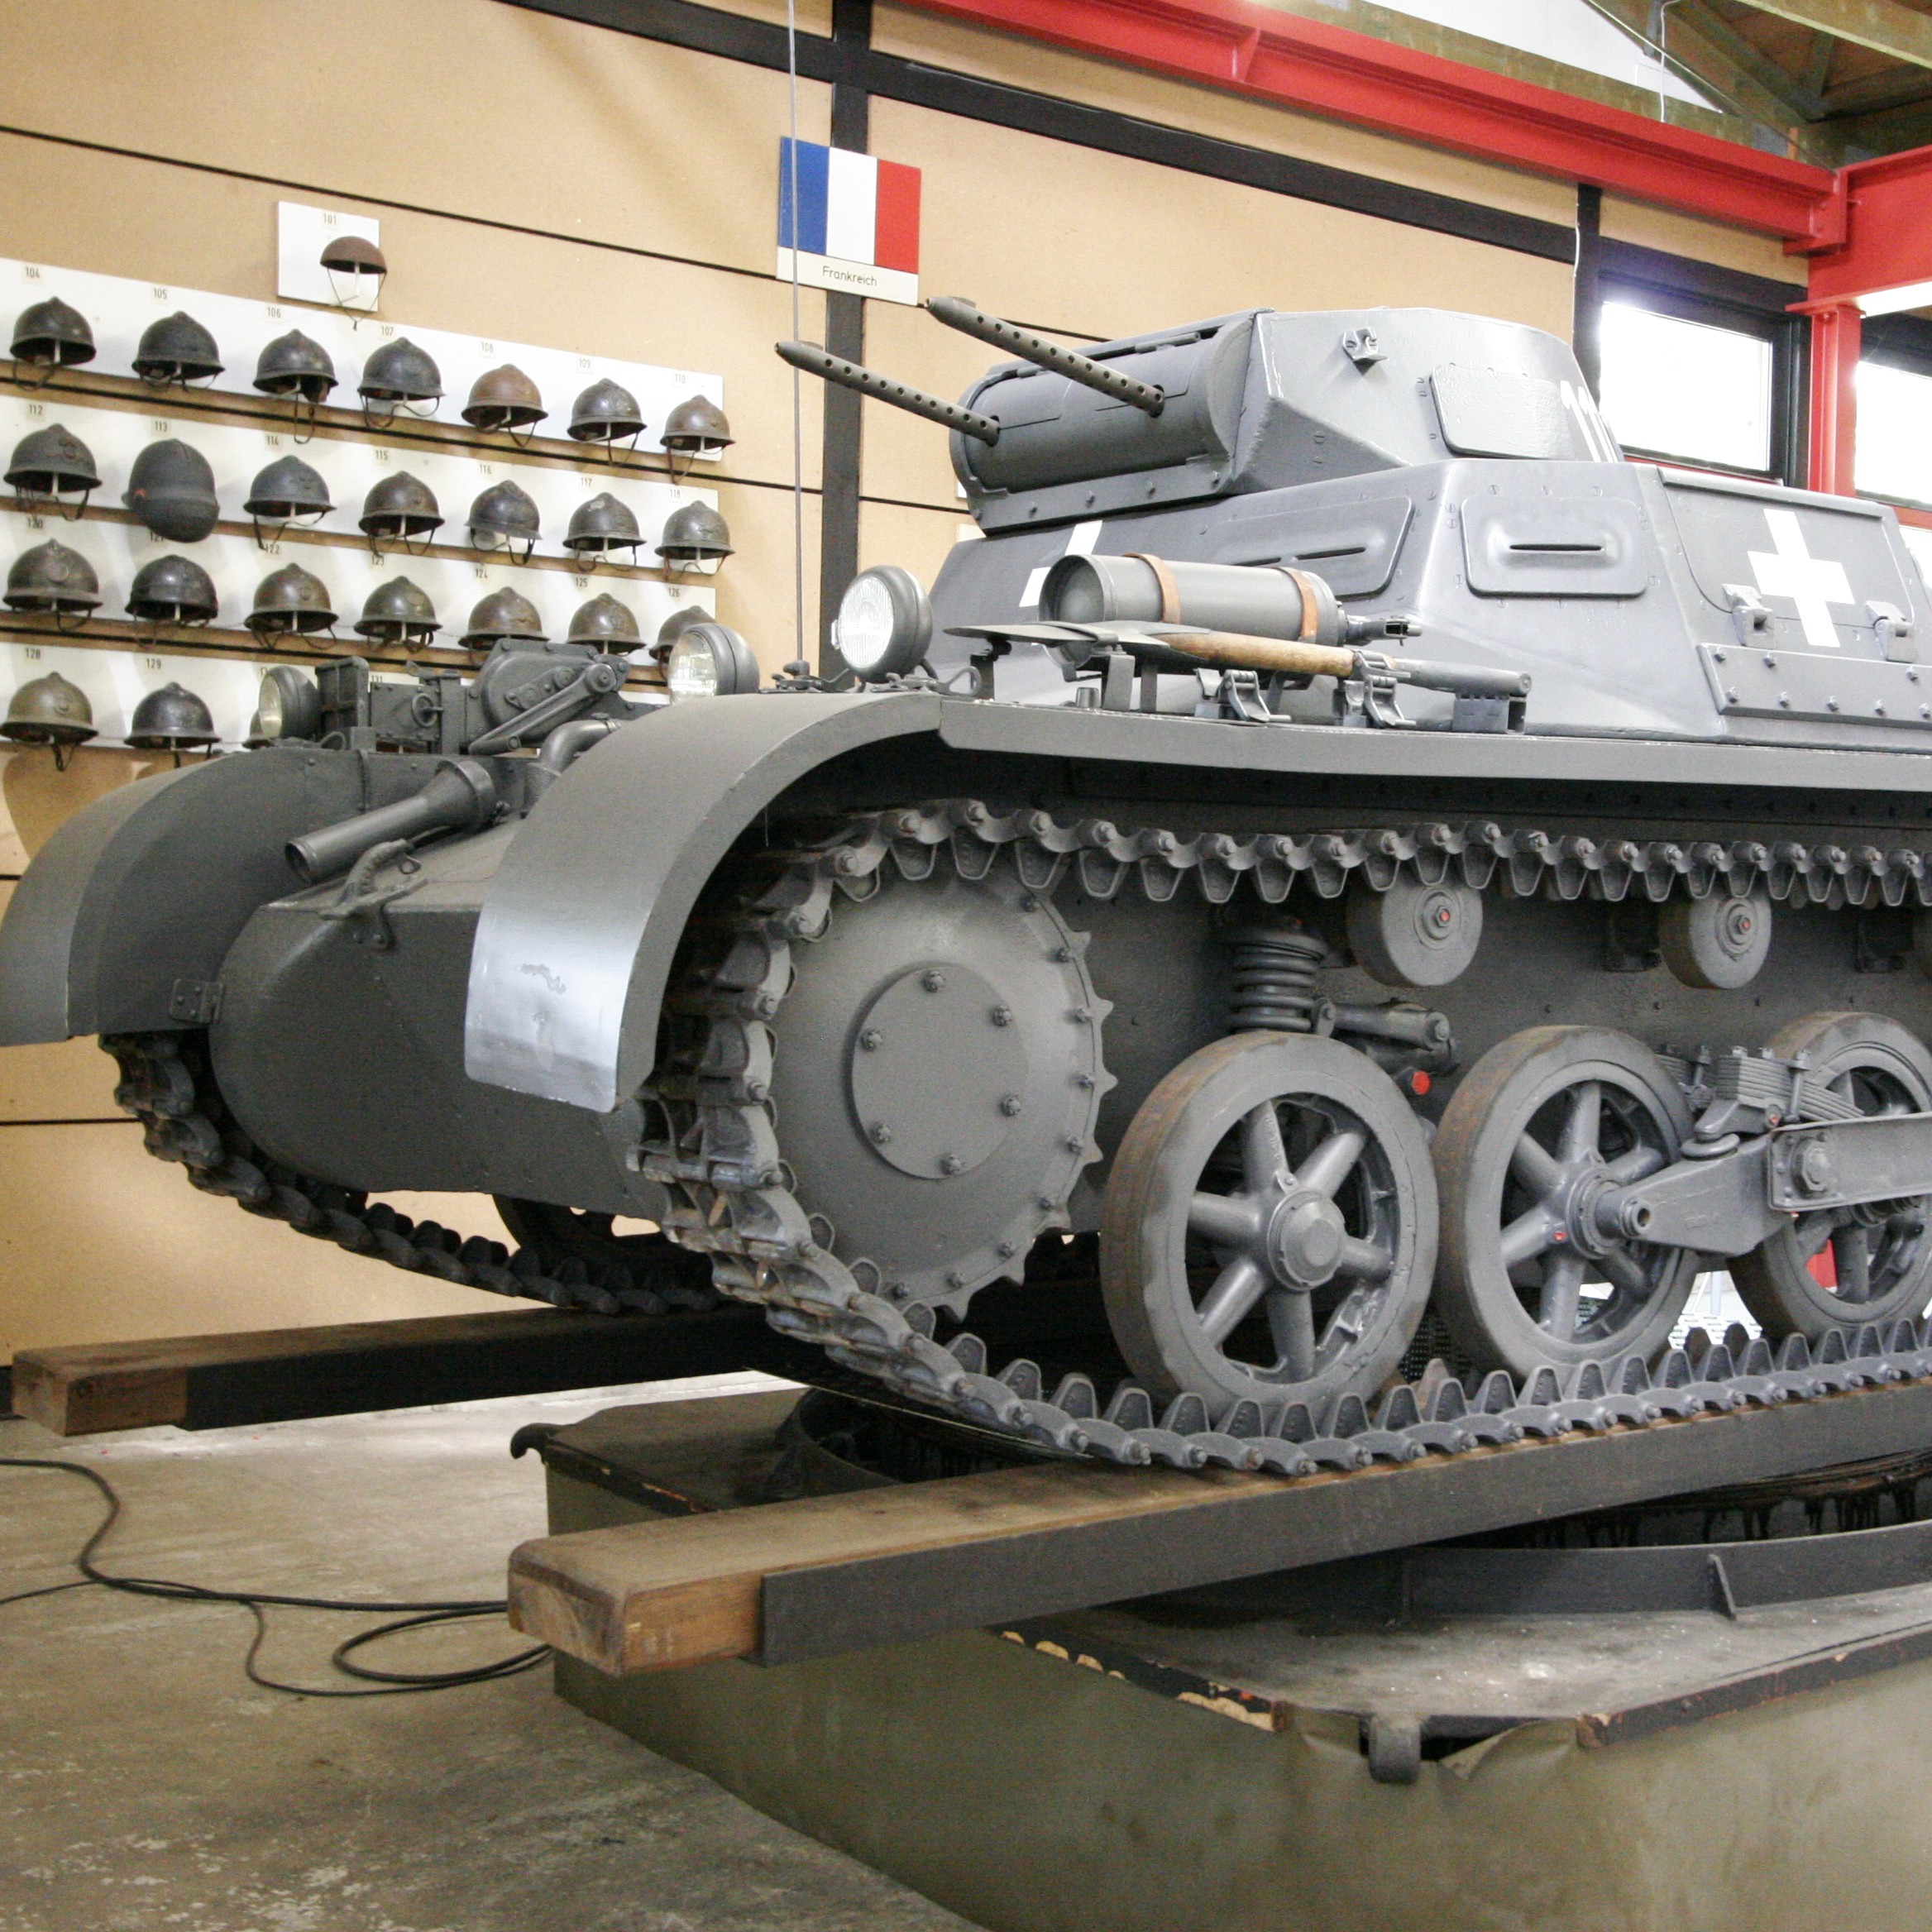 Panzerkampfwagen I- niemiecki czołg lekki. Tego typu pojazdy brał udział w bitwie pod Mokrą.